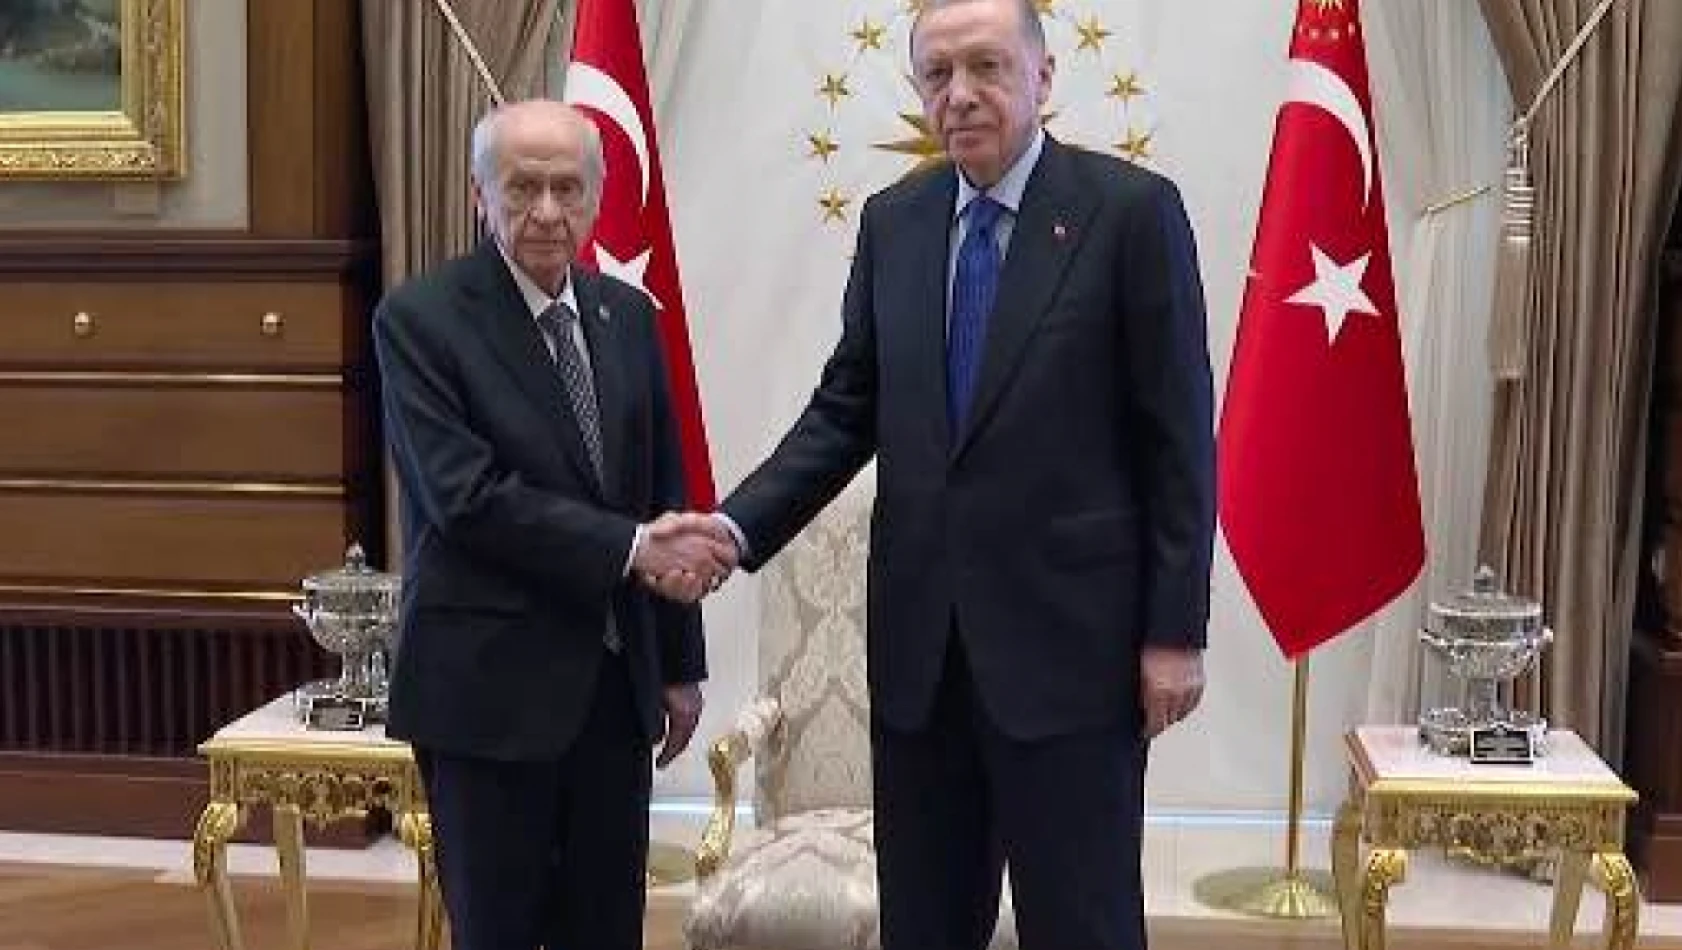 Cumhurbaşkanı Erdoğan ile Bahçeli 1 saat görüştü